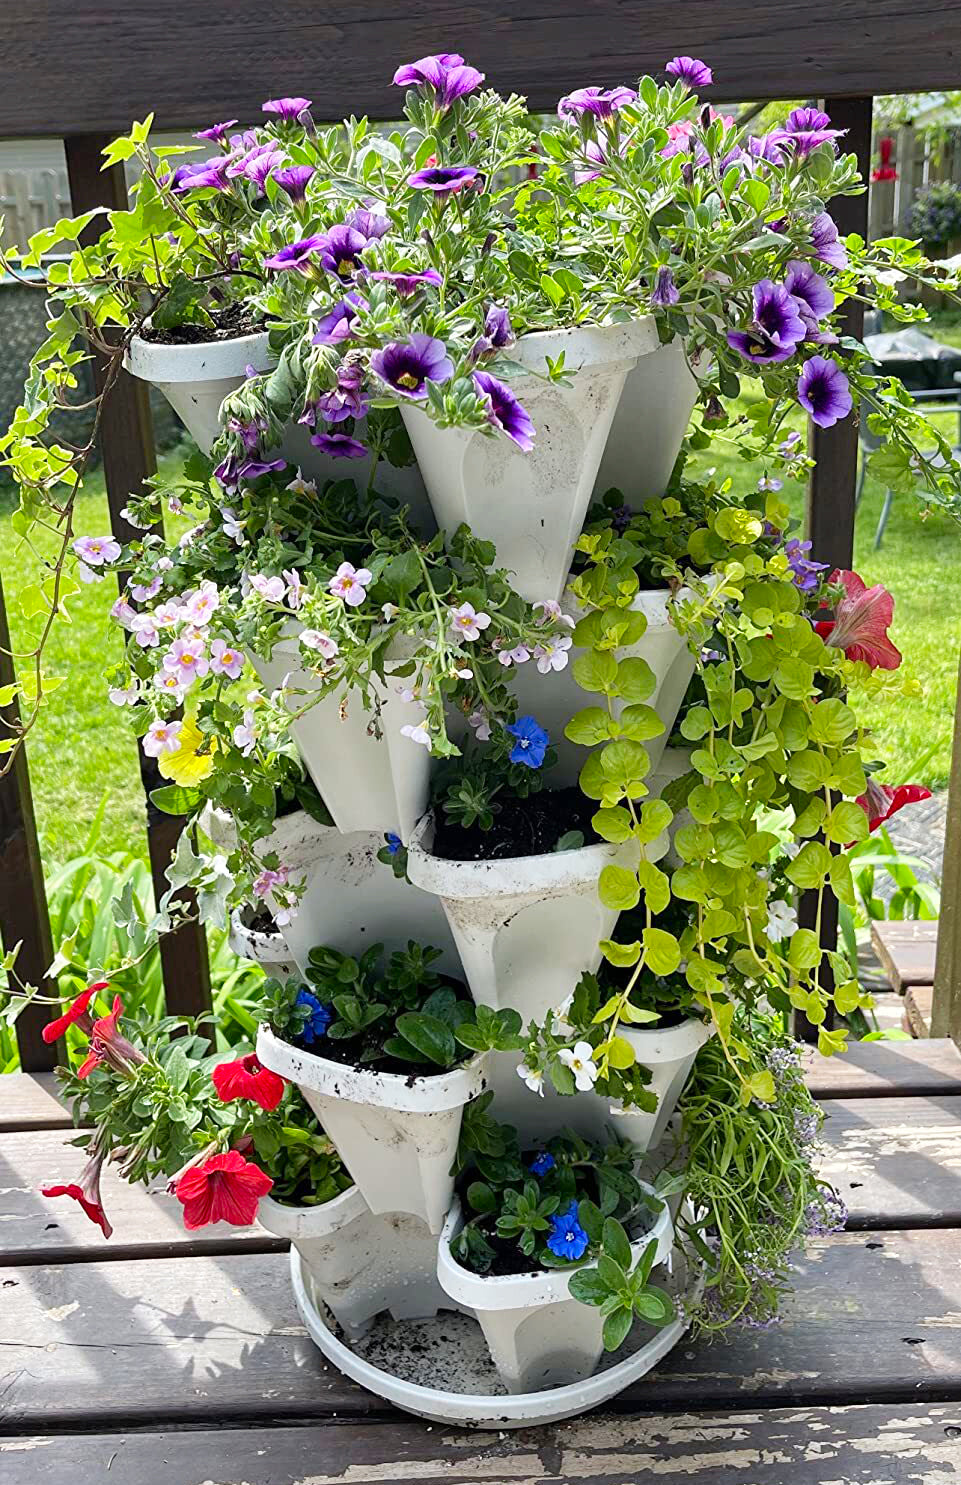 FlowerTower™ Stackable Garden